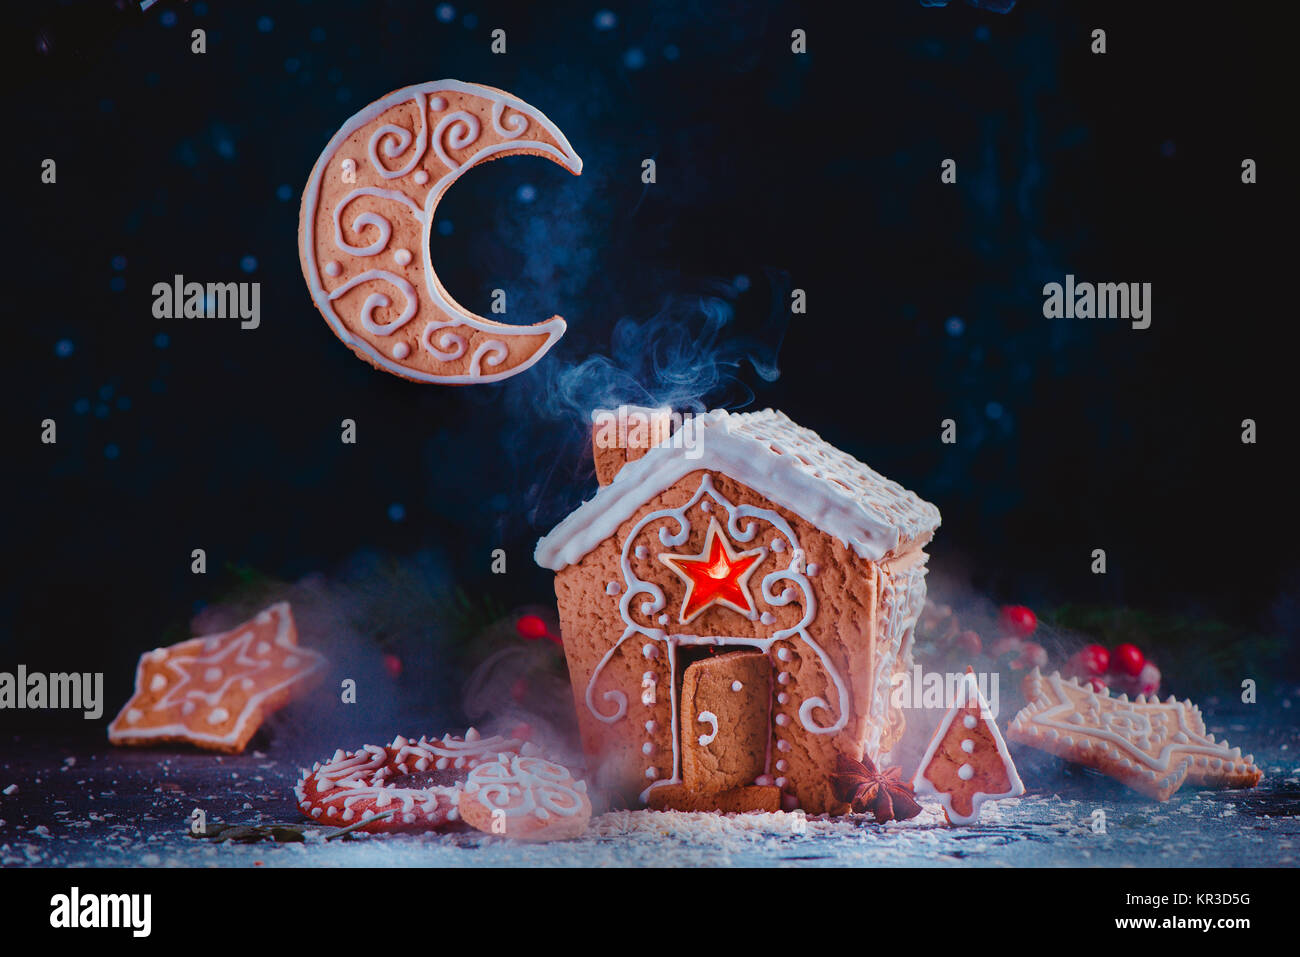 Weihnachten backen Konzept mit einem Lebkuchenhaus, glänzenden Karamell Windows, Keks Mondsichel und steigenden Rauch aus einem Schornstein festlichen Essen Hg Stockfoto